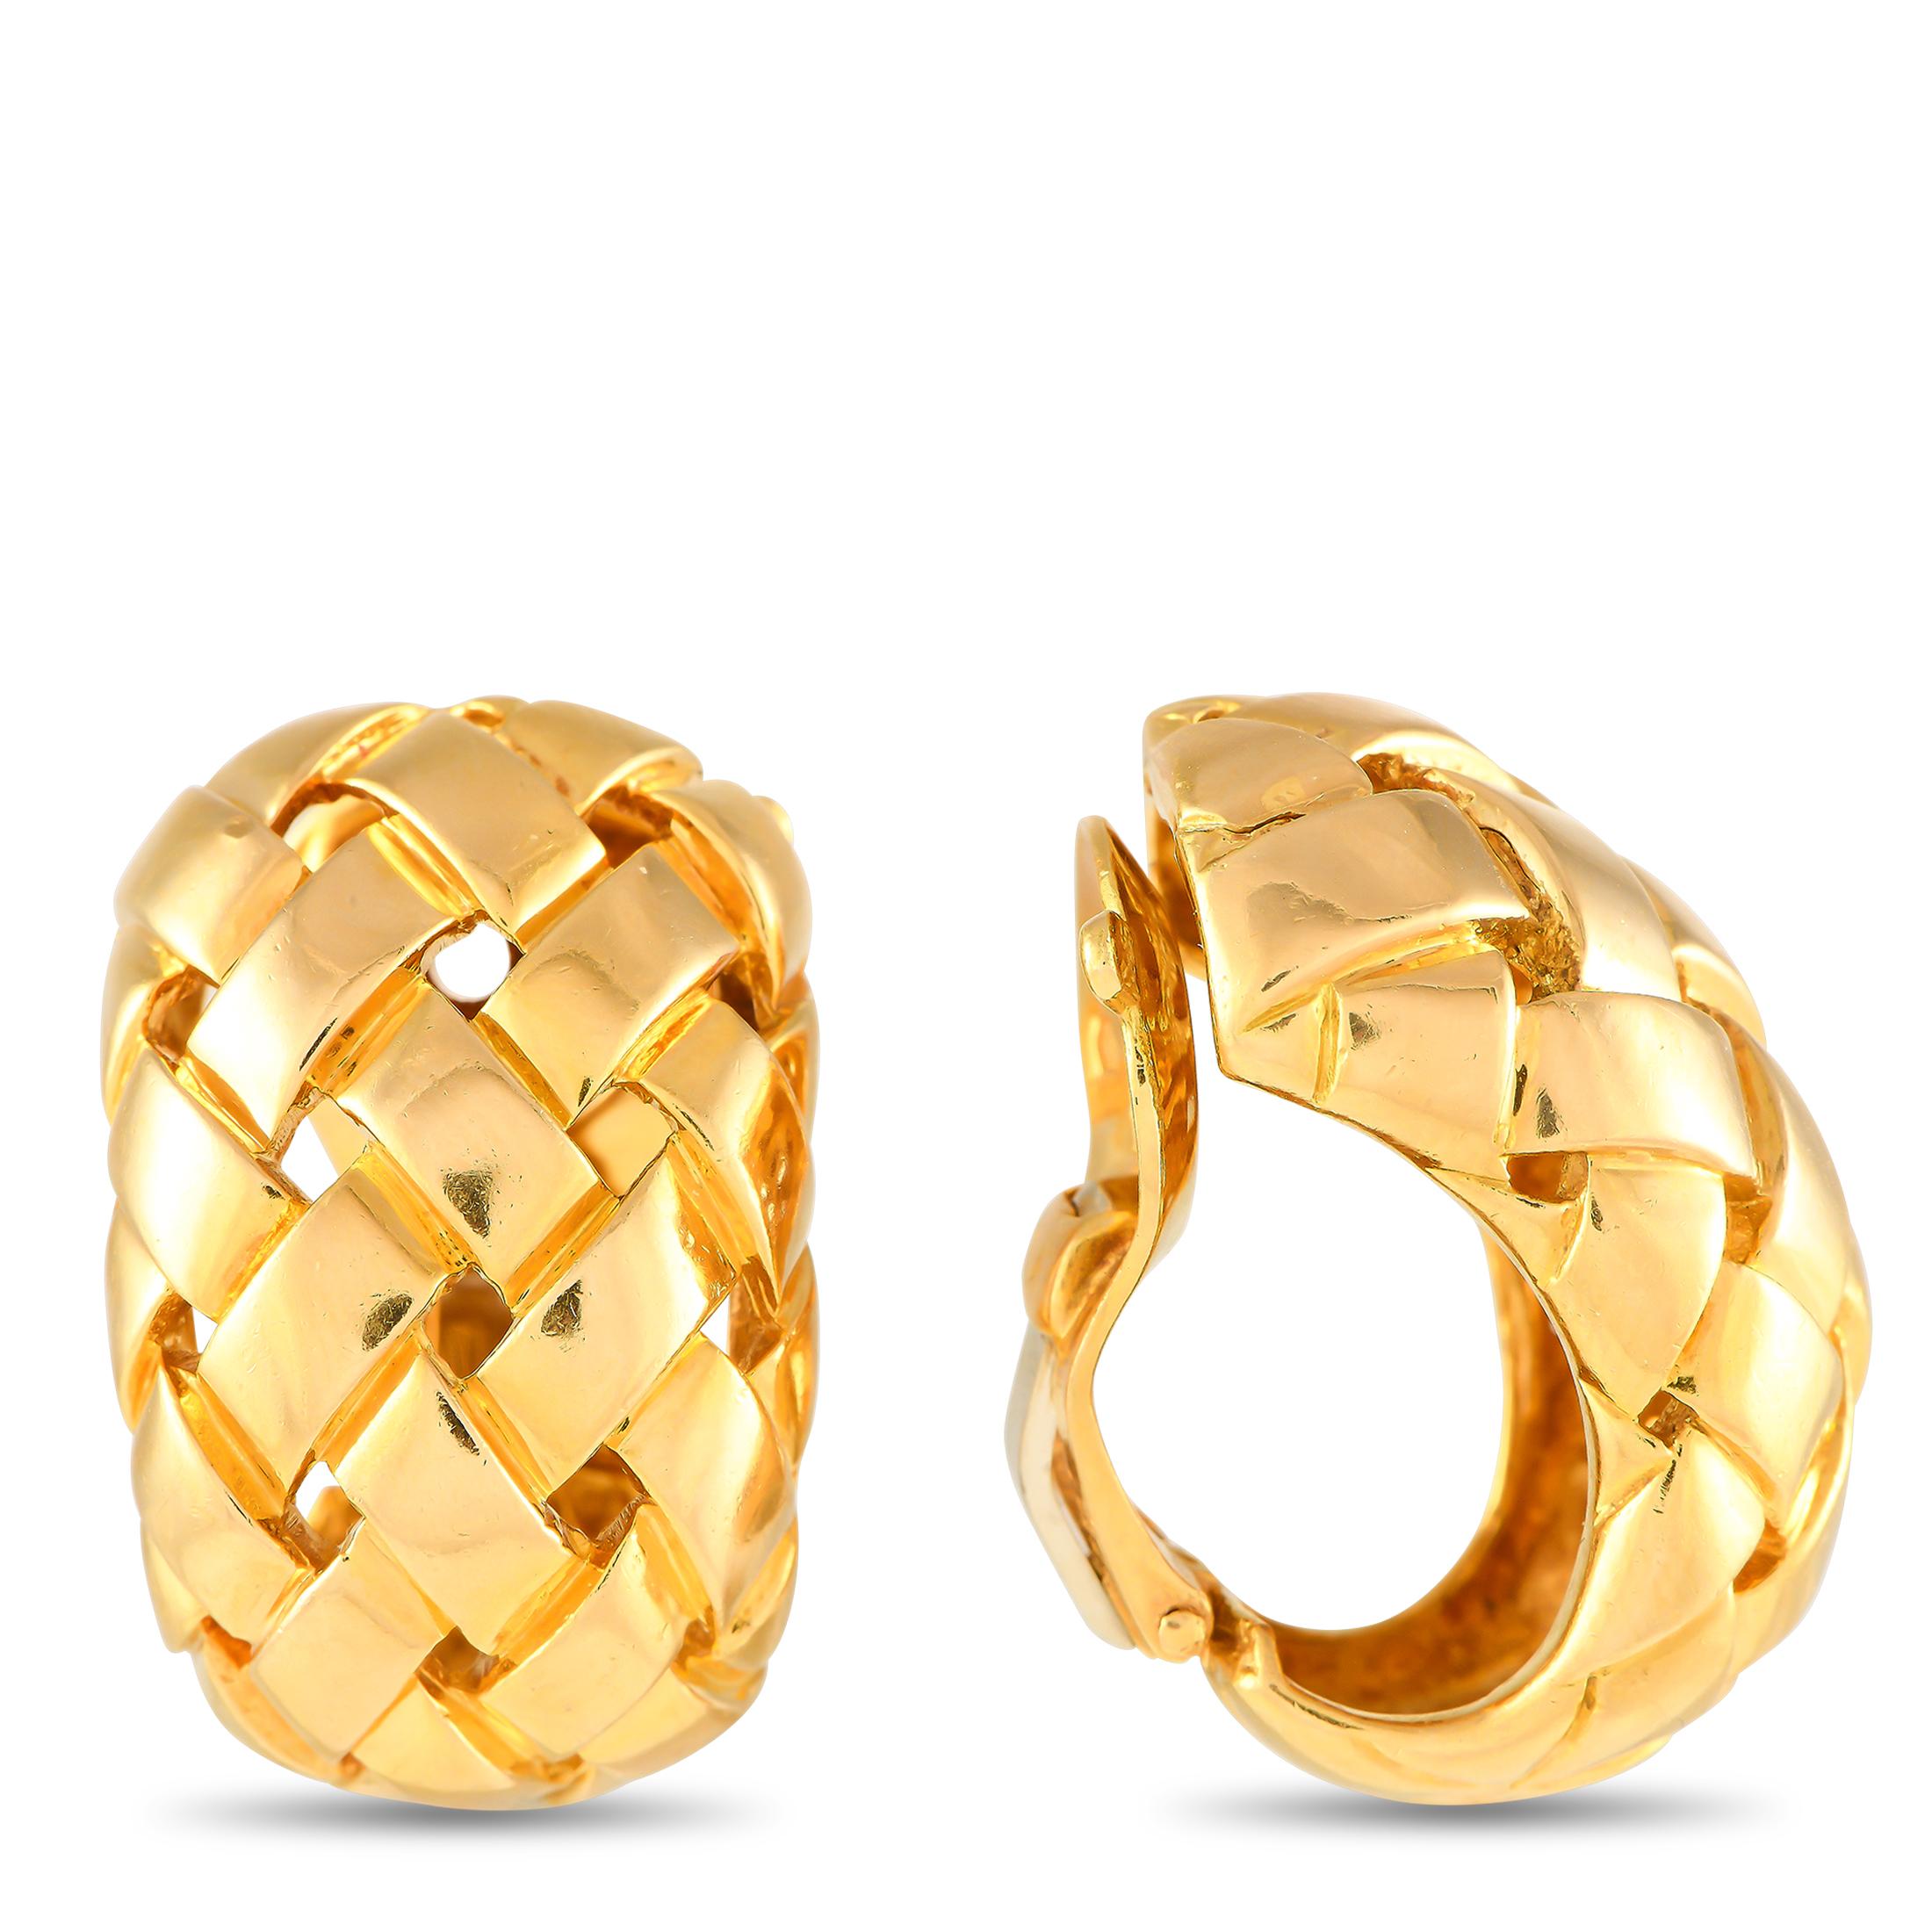 Infusez un sentiment de nostalgie et de sophistication dans votre garde-robe de bijoux avec ces anneaux Van Cleef & Arpels Basket Weave. Ces anneaux épais sont ornés d'un motif tissé croisé qui ne manquera pas d'ajouter de la texture et de la